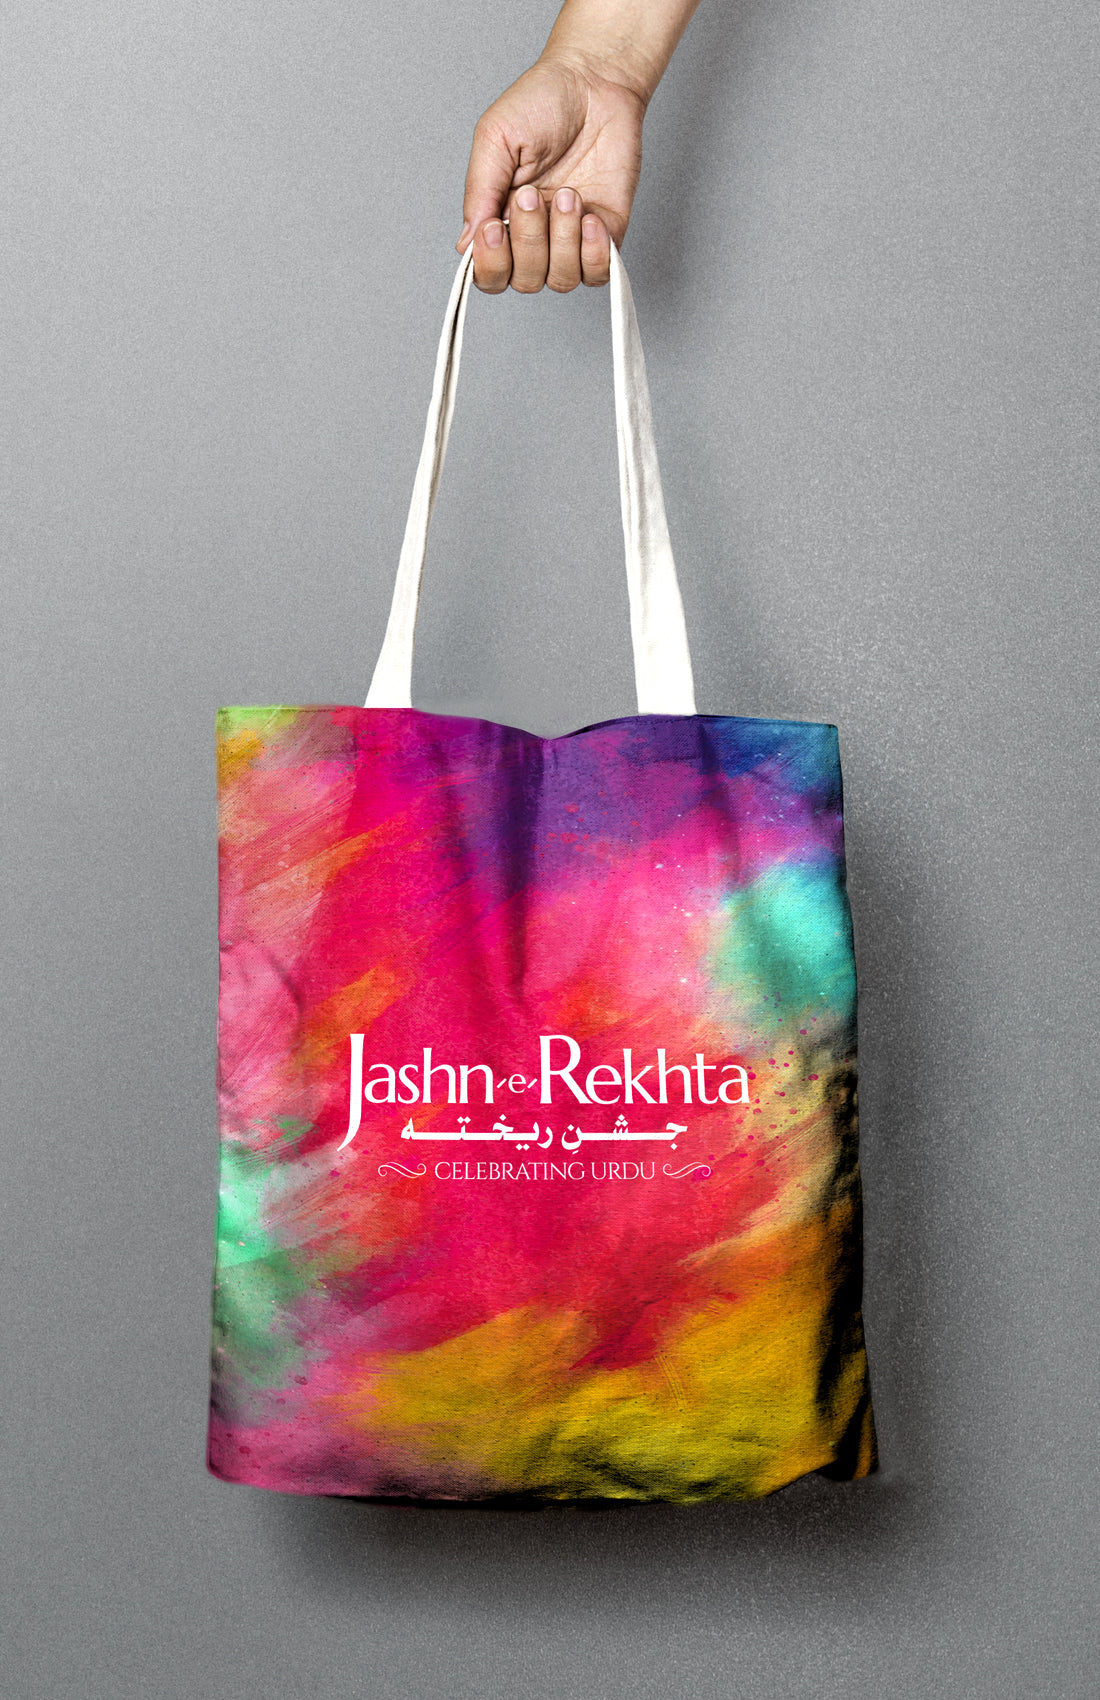 Jashn-e-rekhta Canvas Tote Bag for Men & Women